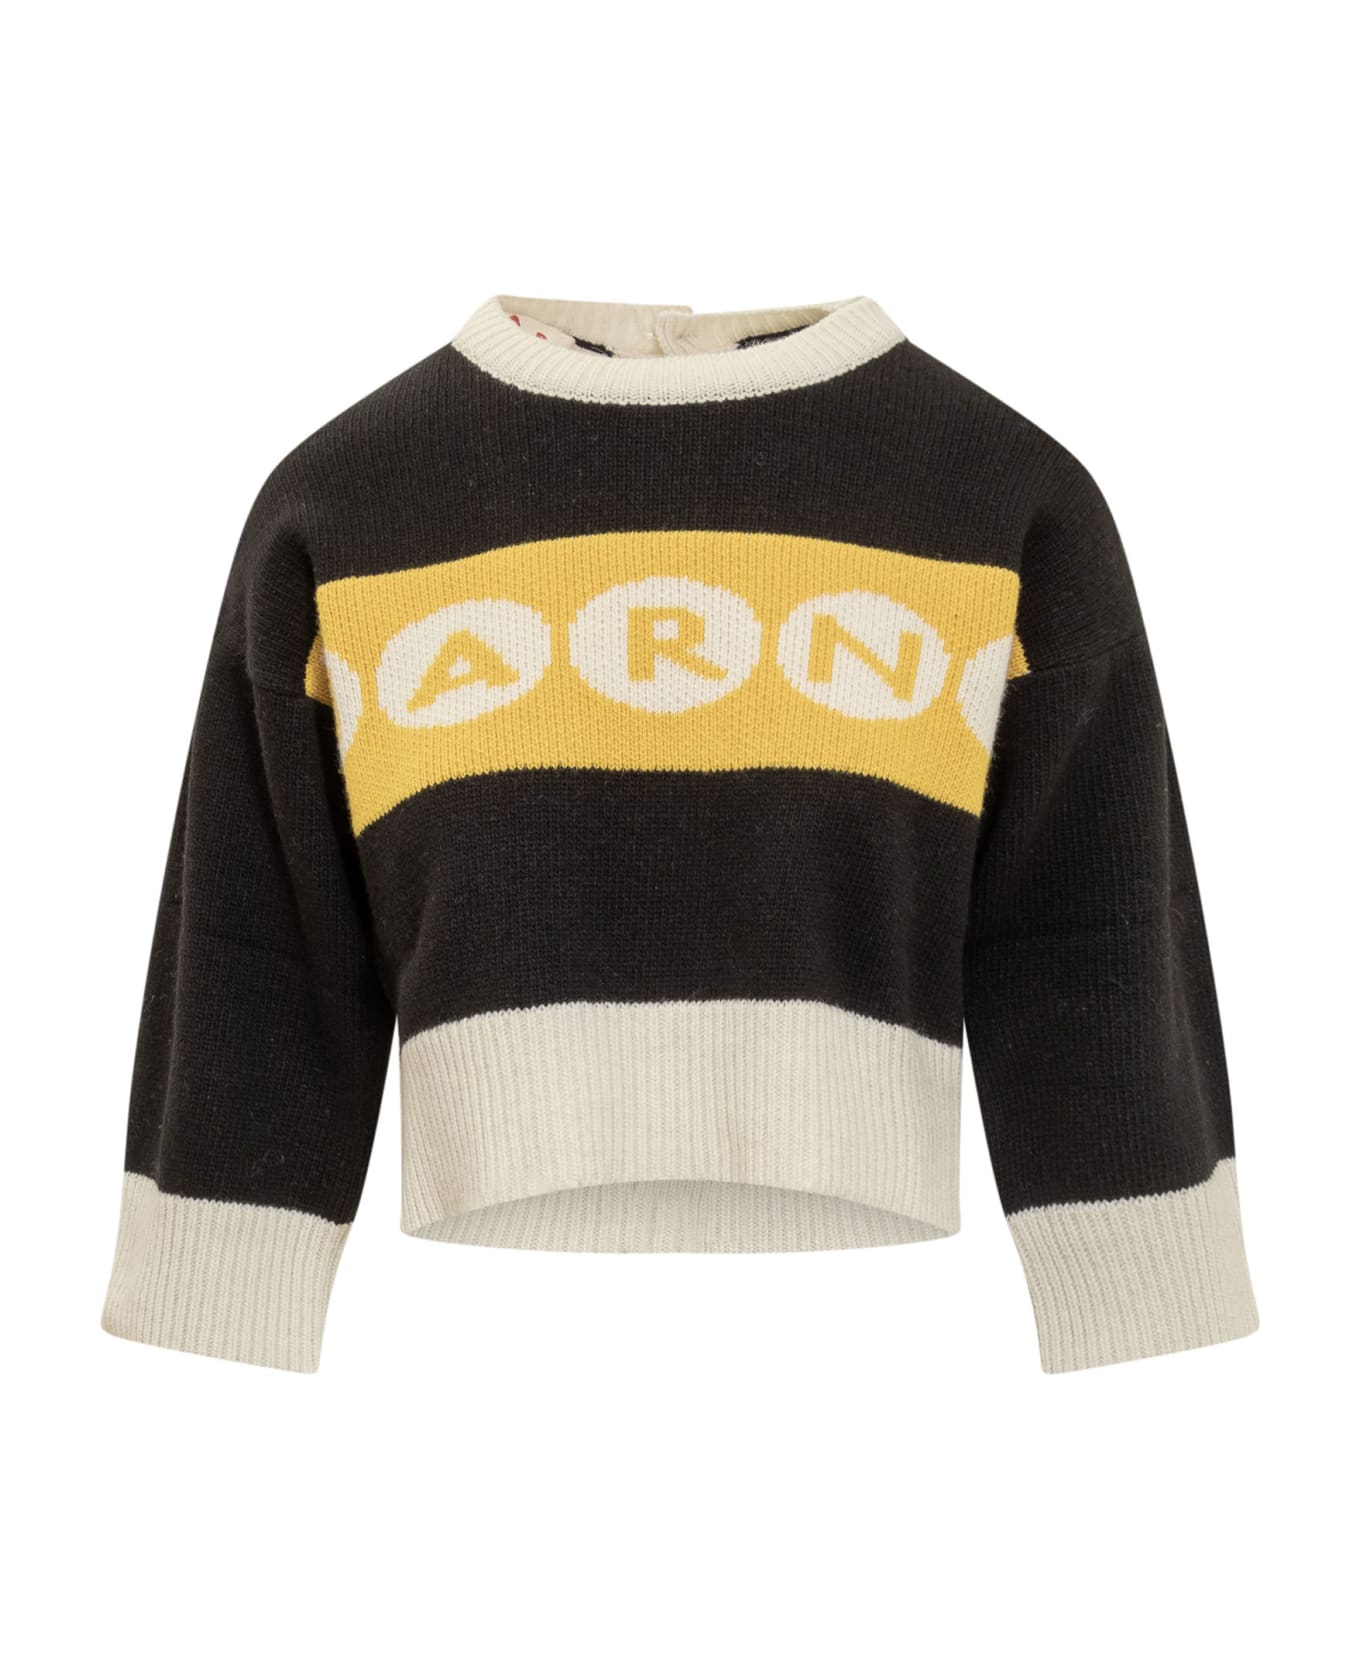 Marni Two-tone Wool Sweater - 00N99